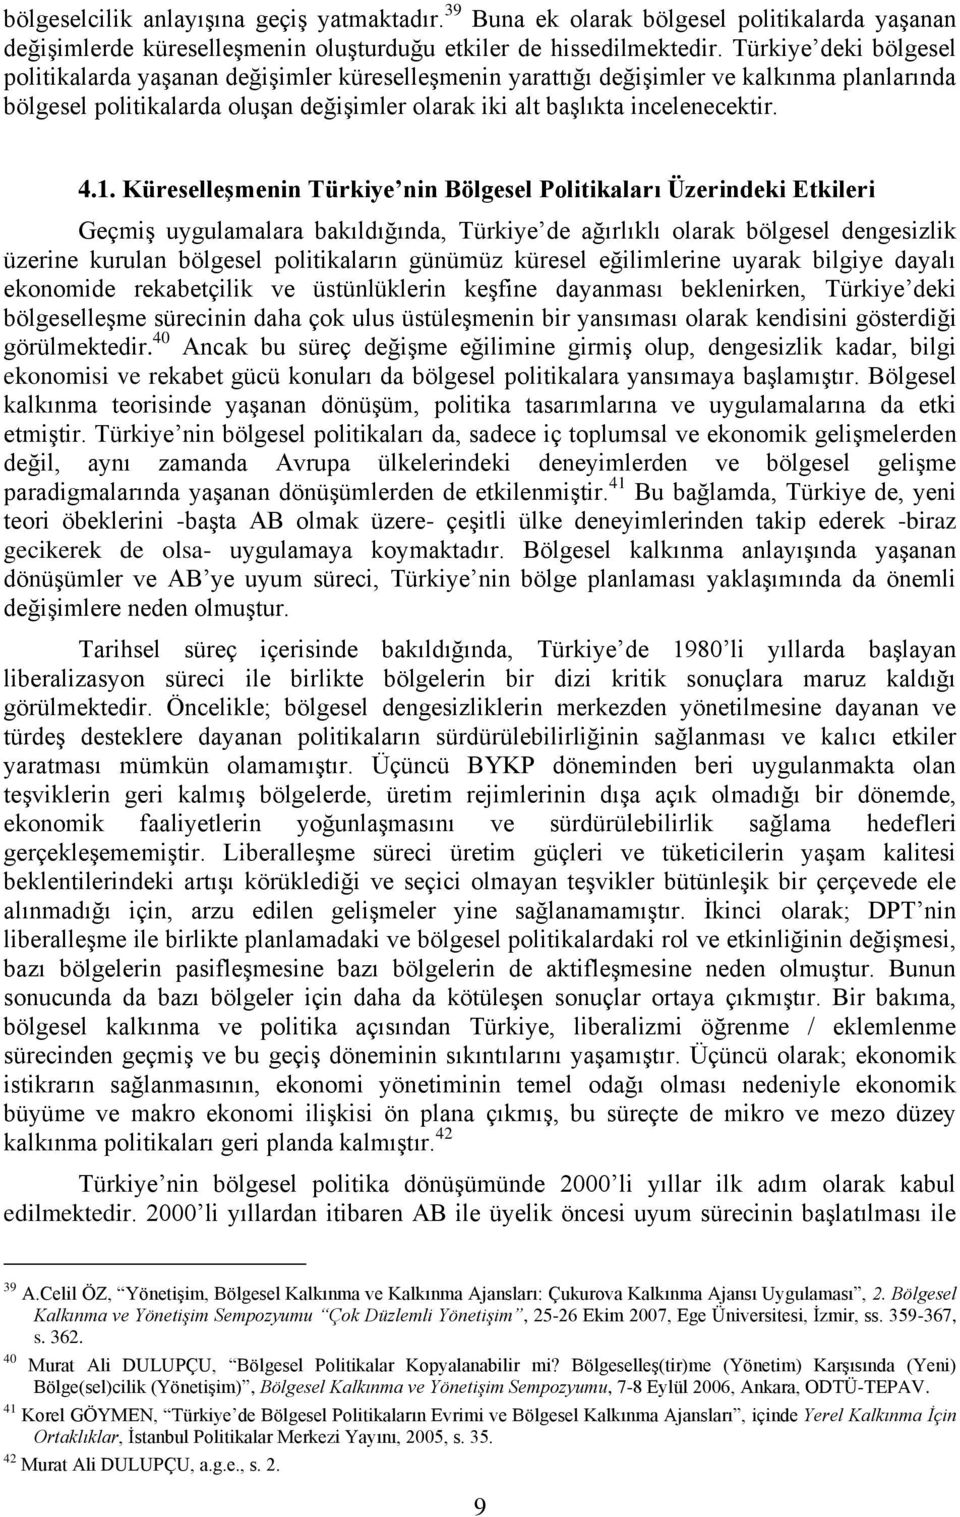 1. Küreselleşmenin Türkiye nin Bölgesel Politikaları Üzerindeki Etkileri Geçmiş uygulamalara bakıldığında, Türkiye de ağırlıklı olarak bölgesel dengesizlik üzerine kurulan bölgesel politikaların